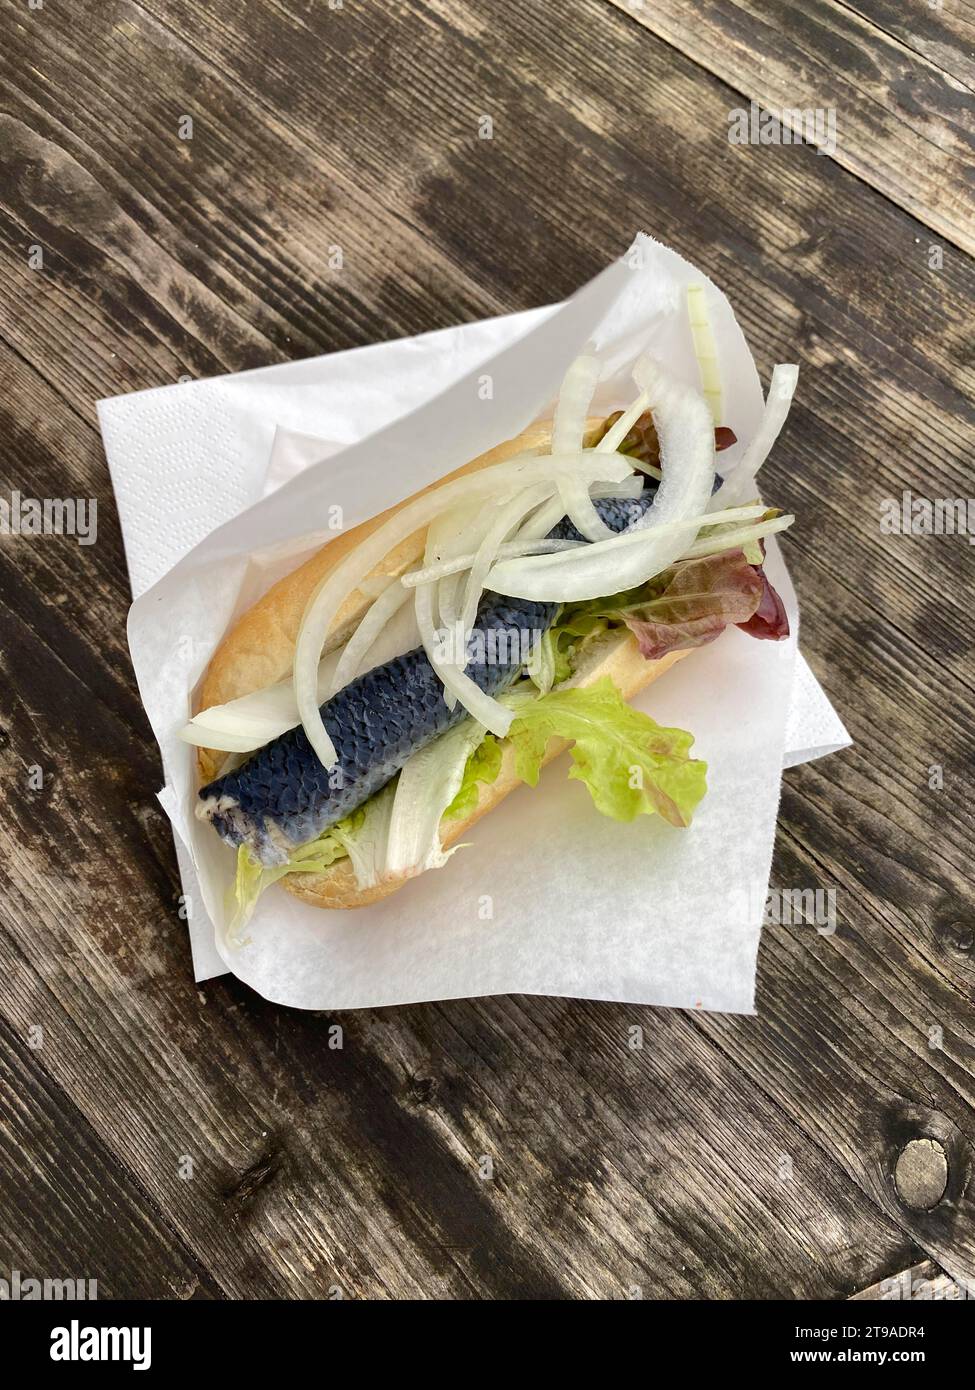 Rouleau de hareng Bismarck, rouleau de hareng avec hareng Bismarck, hareng, oignons, salade, se trouve dans une serviette sur une table en bois, île de la mer du Nord Sylt, mer du Nord Banque D'Images